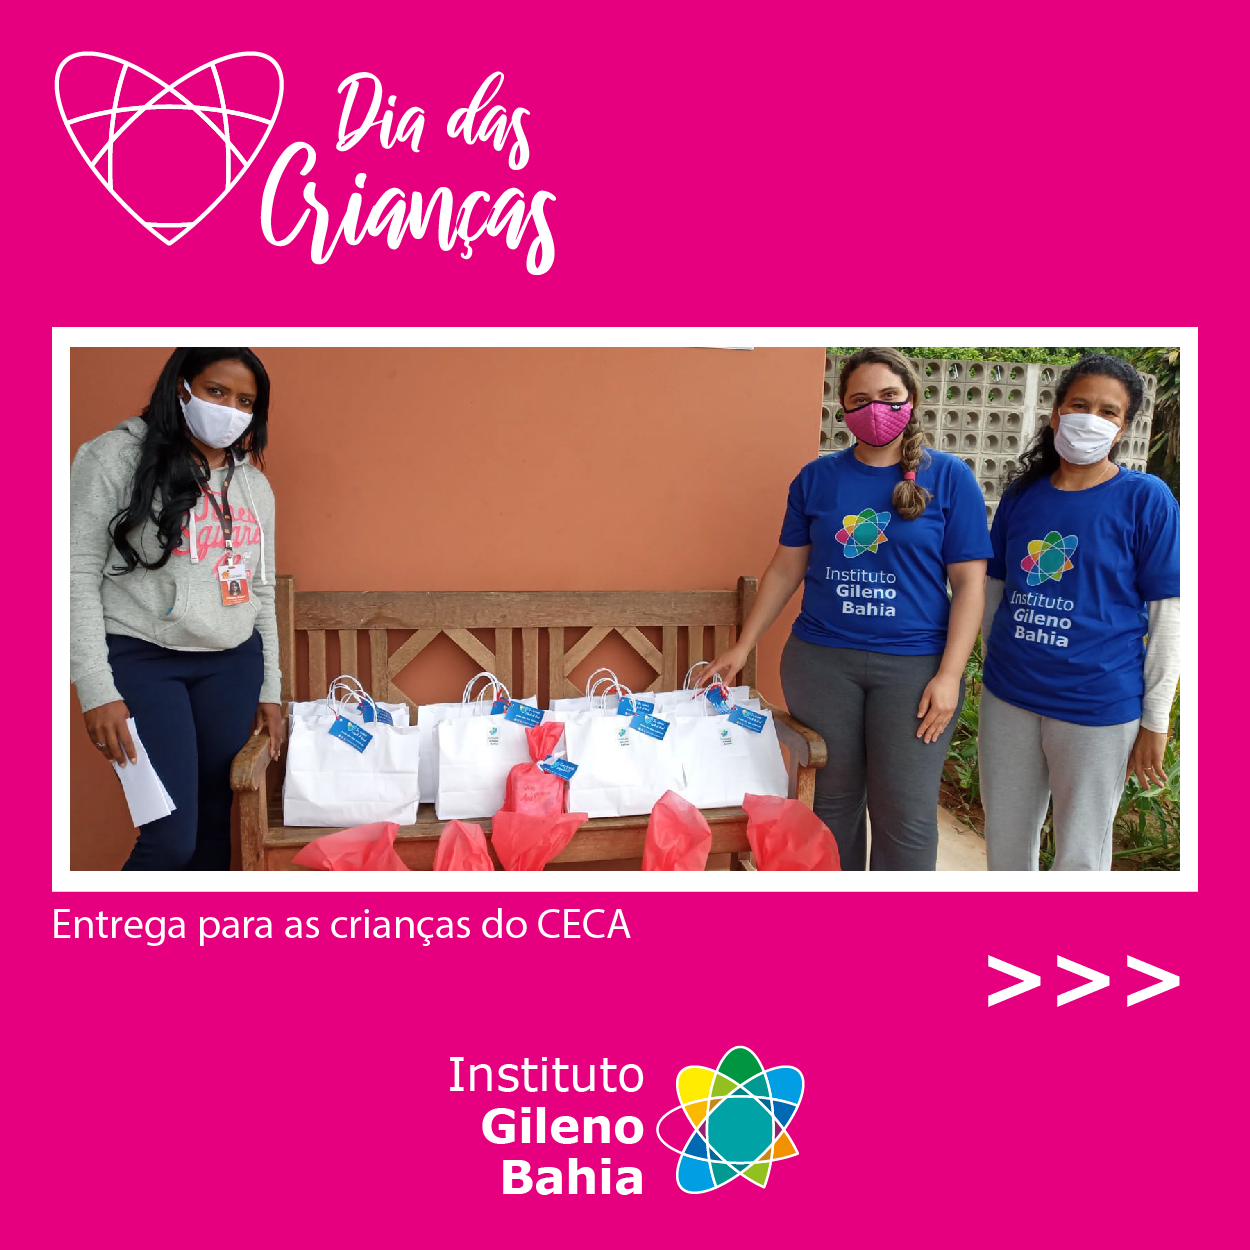 Instituto Gileno Bahia beneficia o CECA no dia das crianças